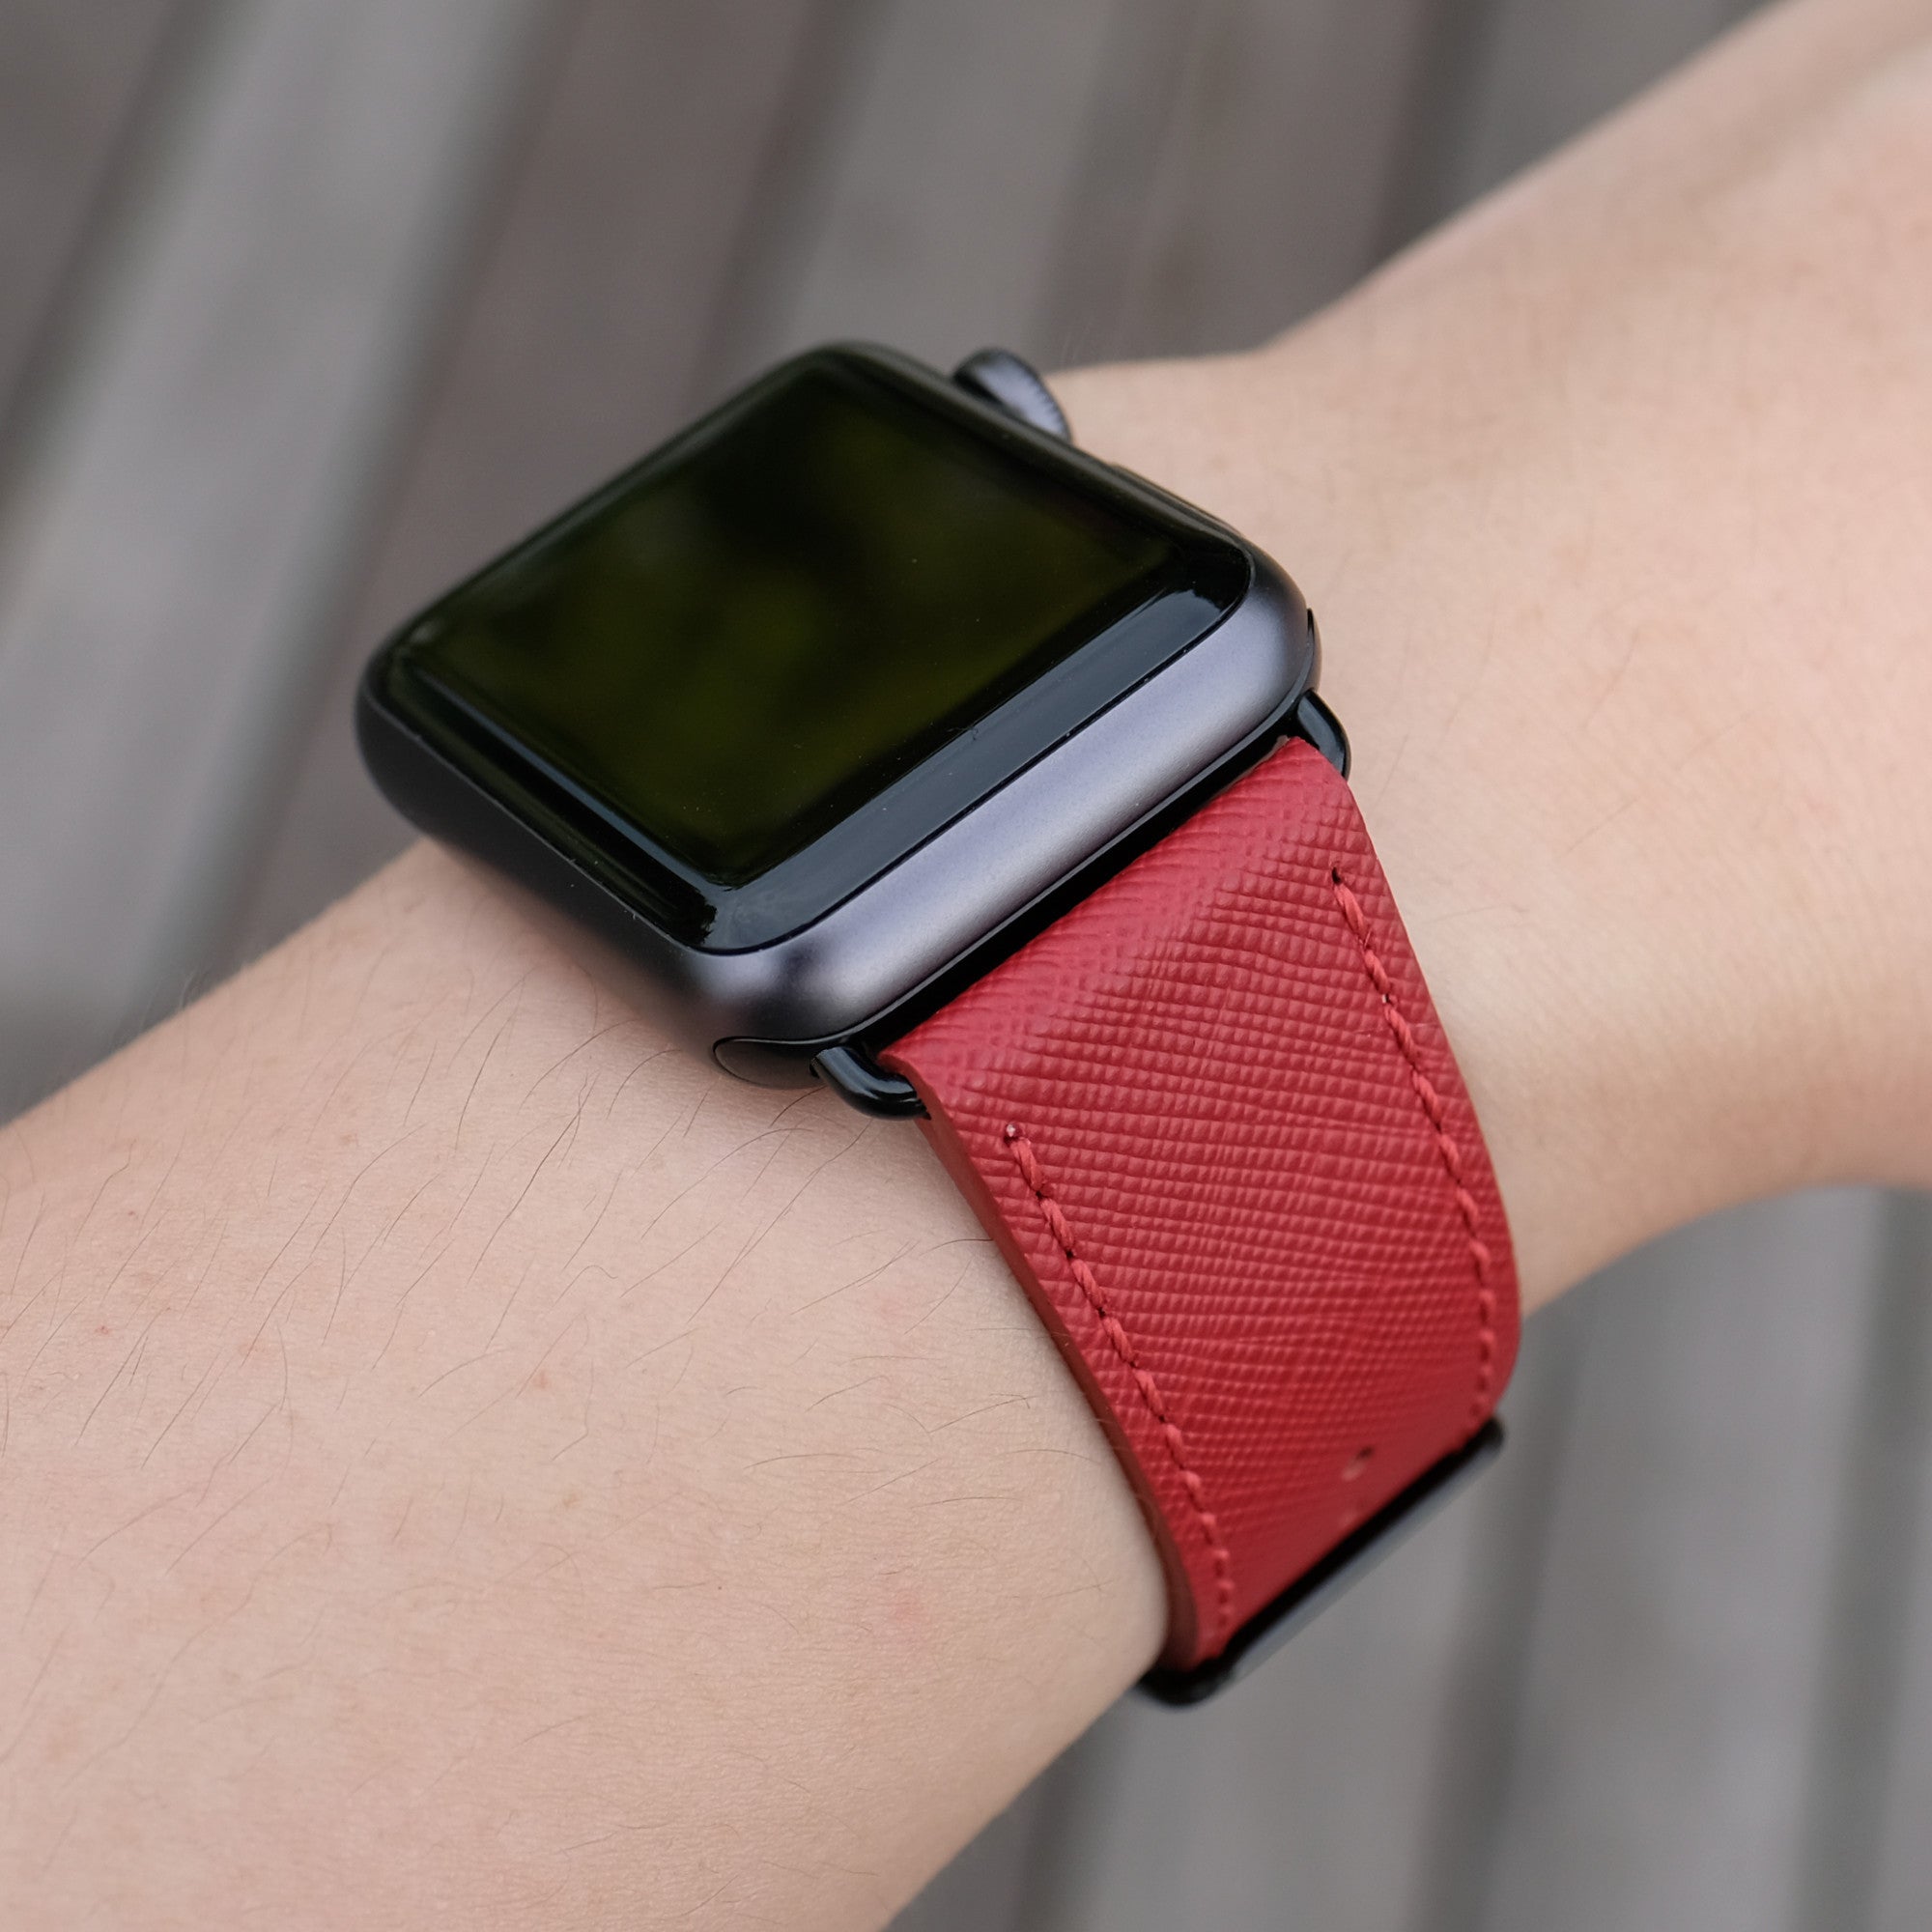 Handdn Red Calfskin Apple Watch Band